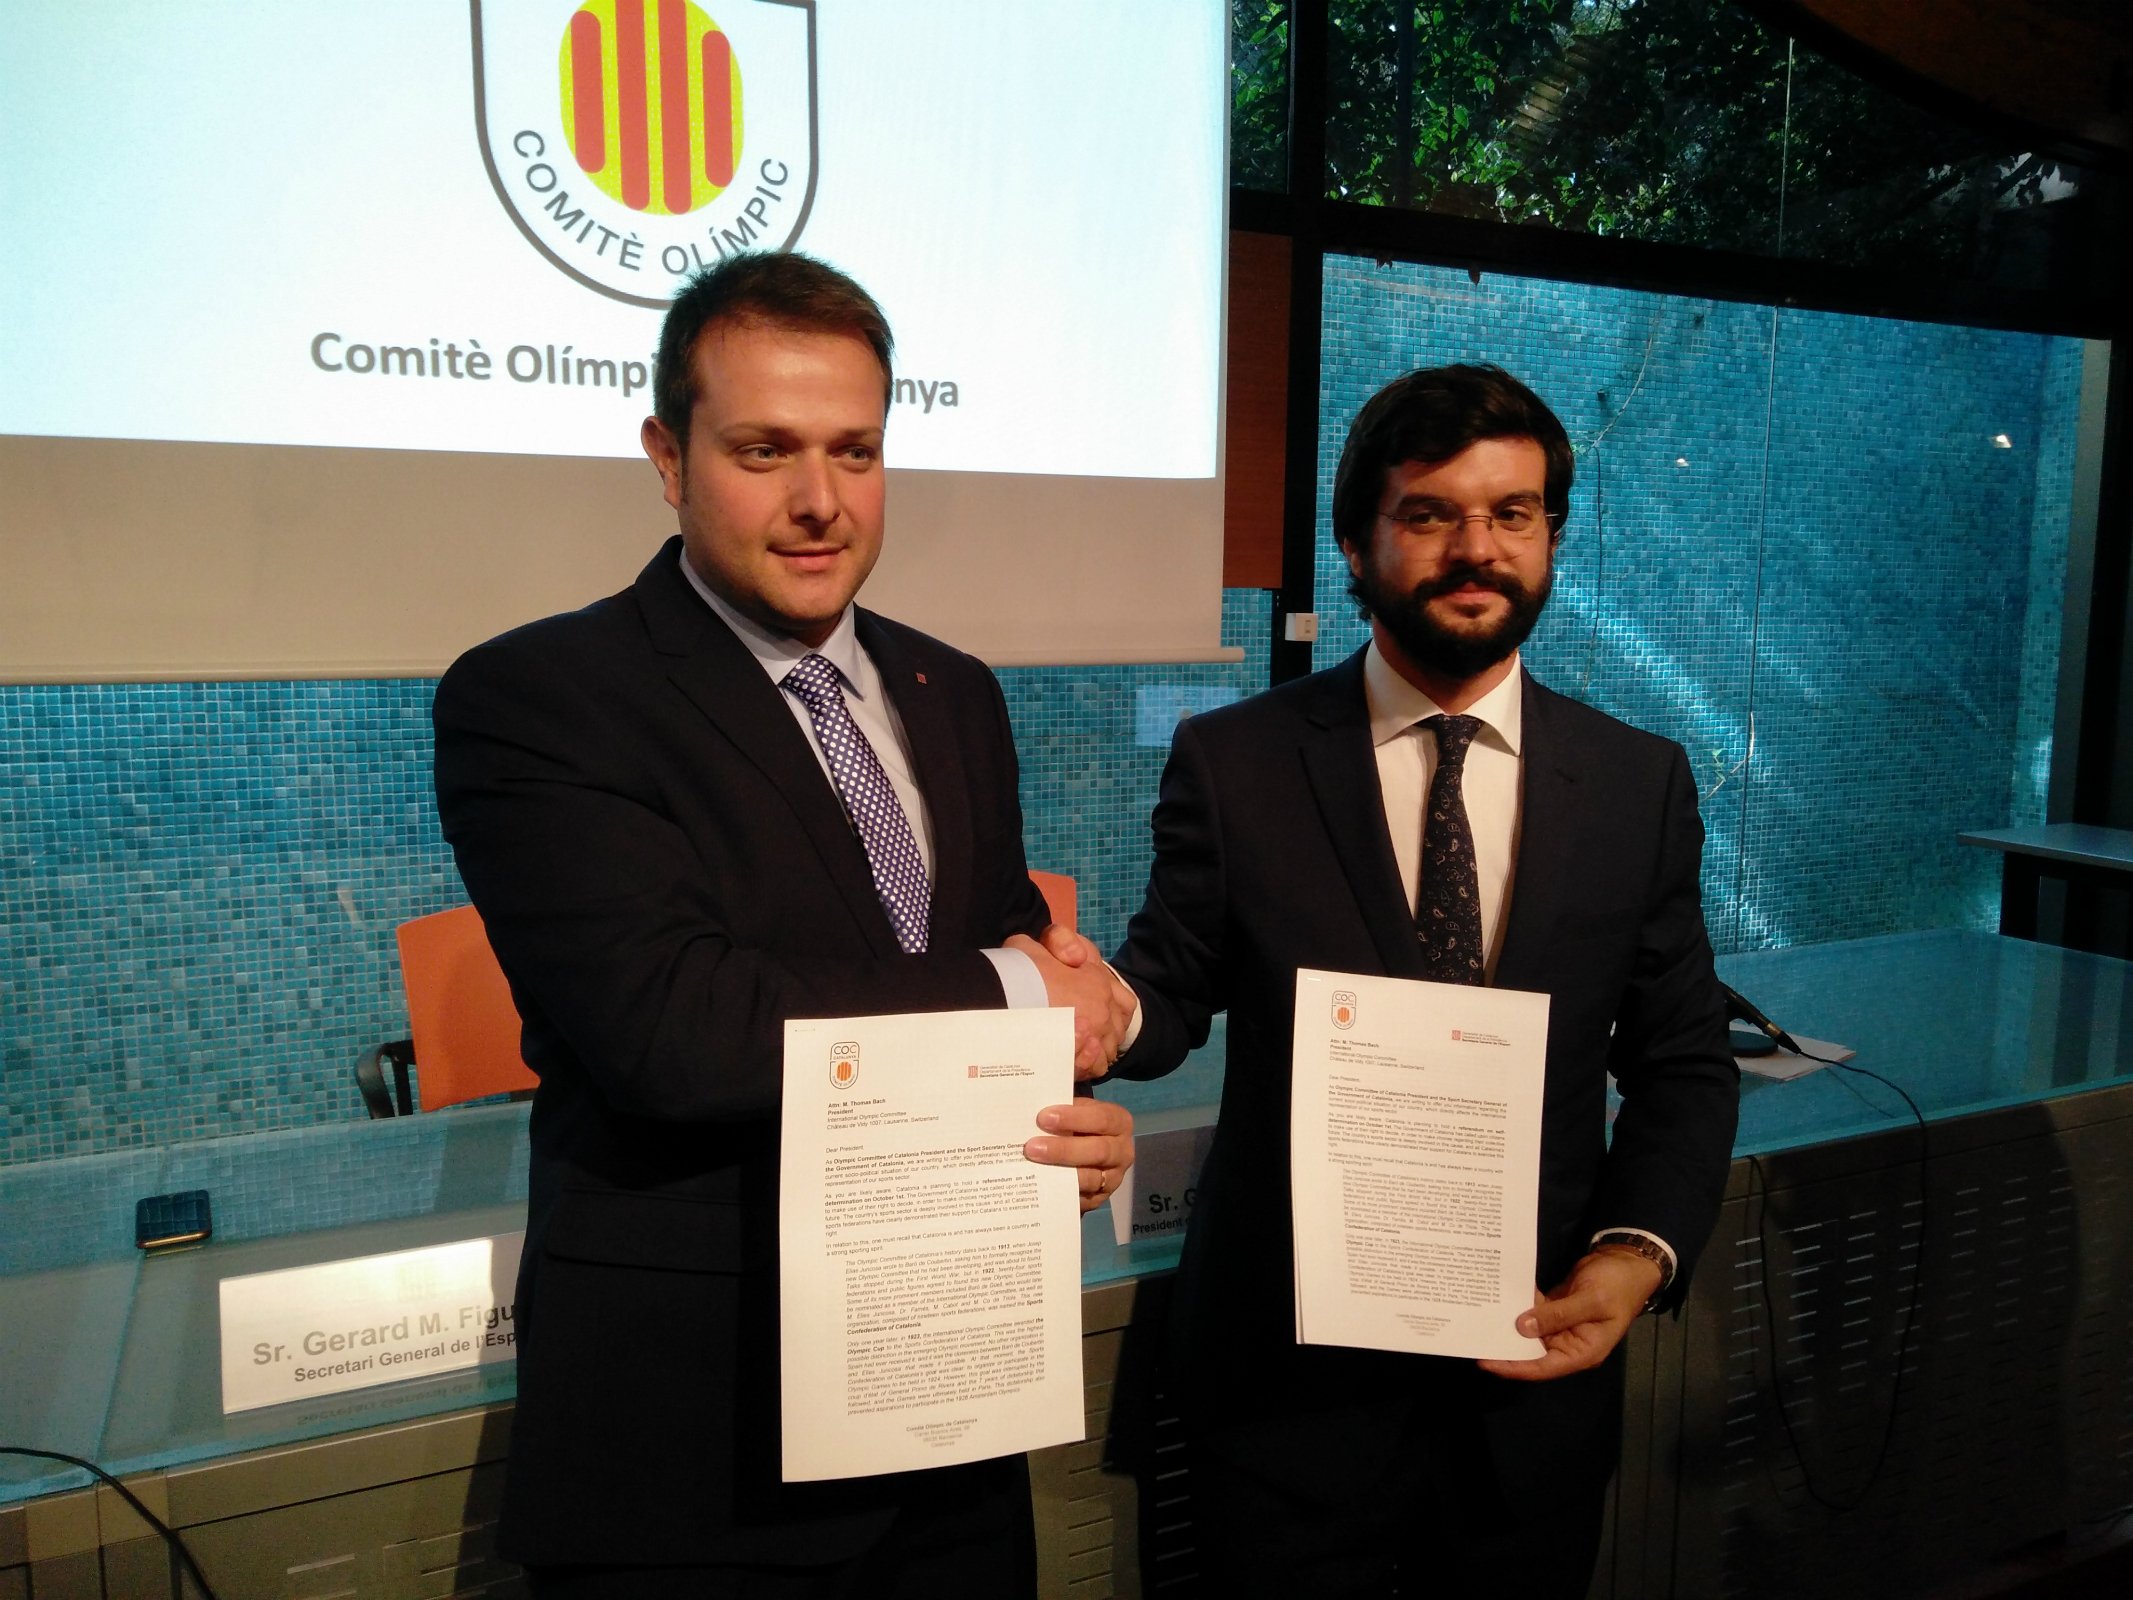 Catalunya pide entrar en el Comité Olímpico Internacional si gana el sí al referéndum